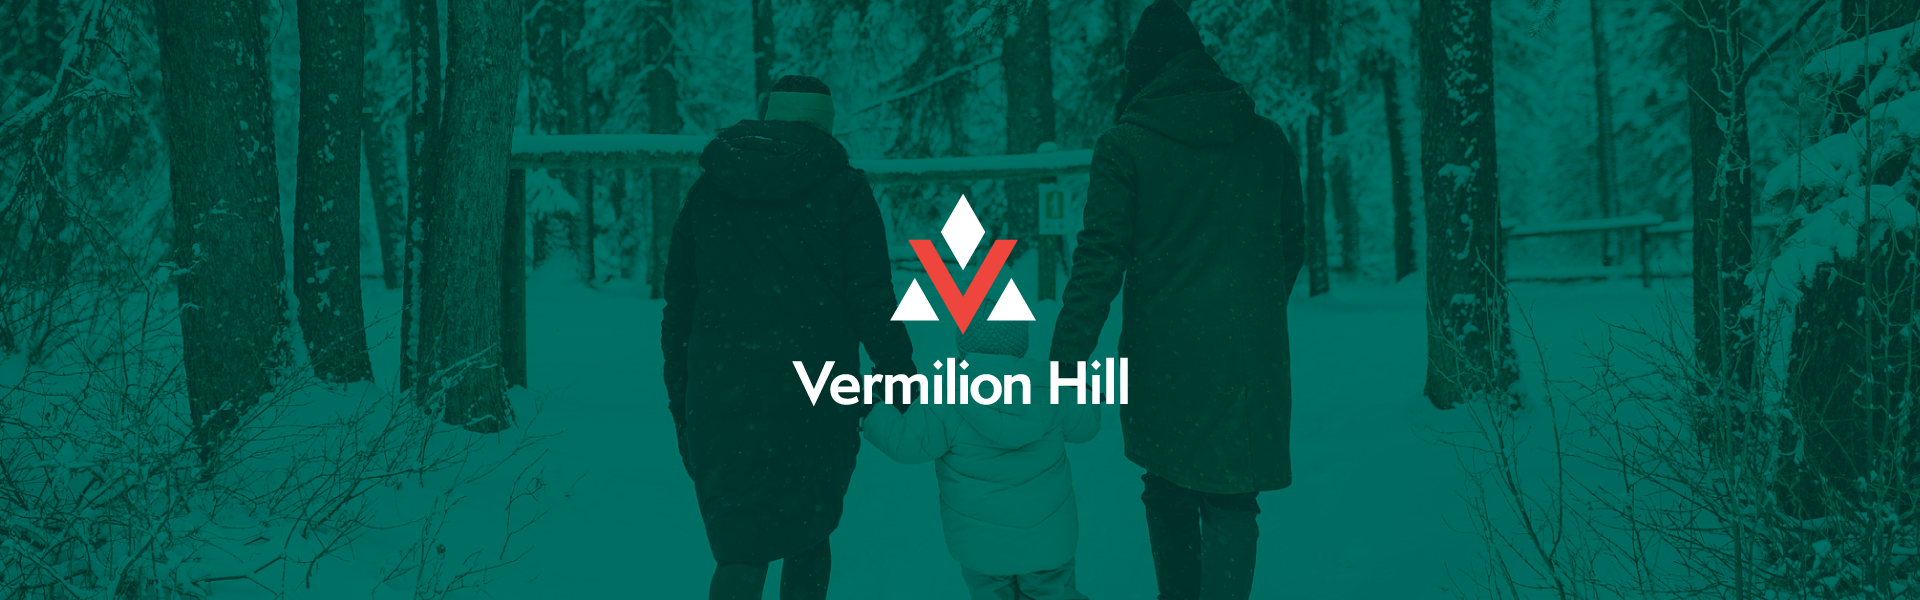 Vermilion Hill